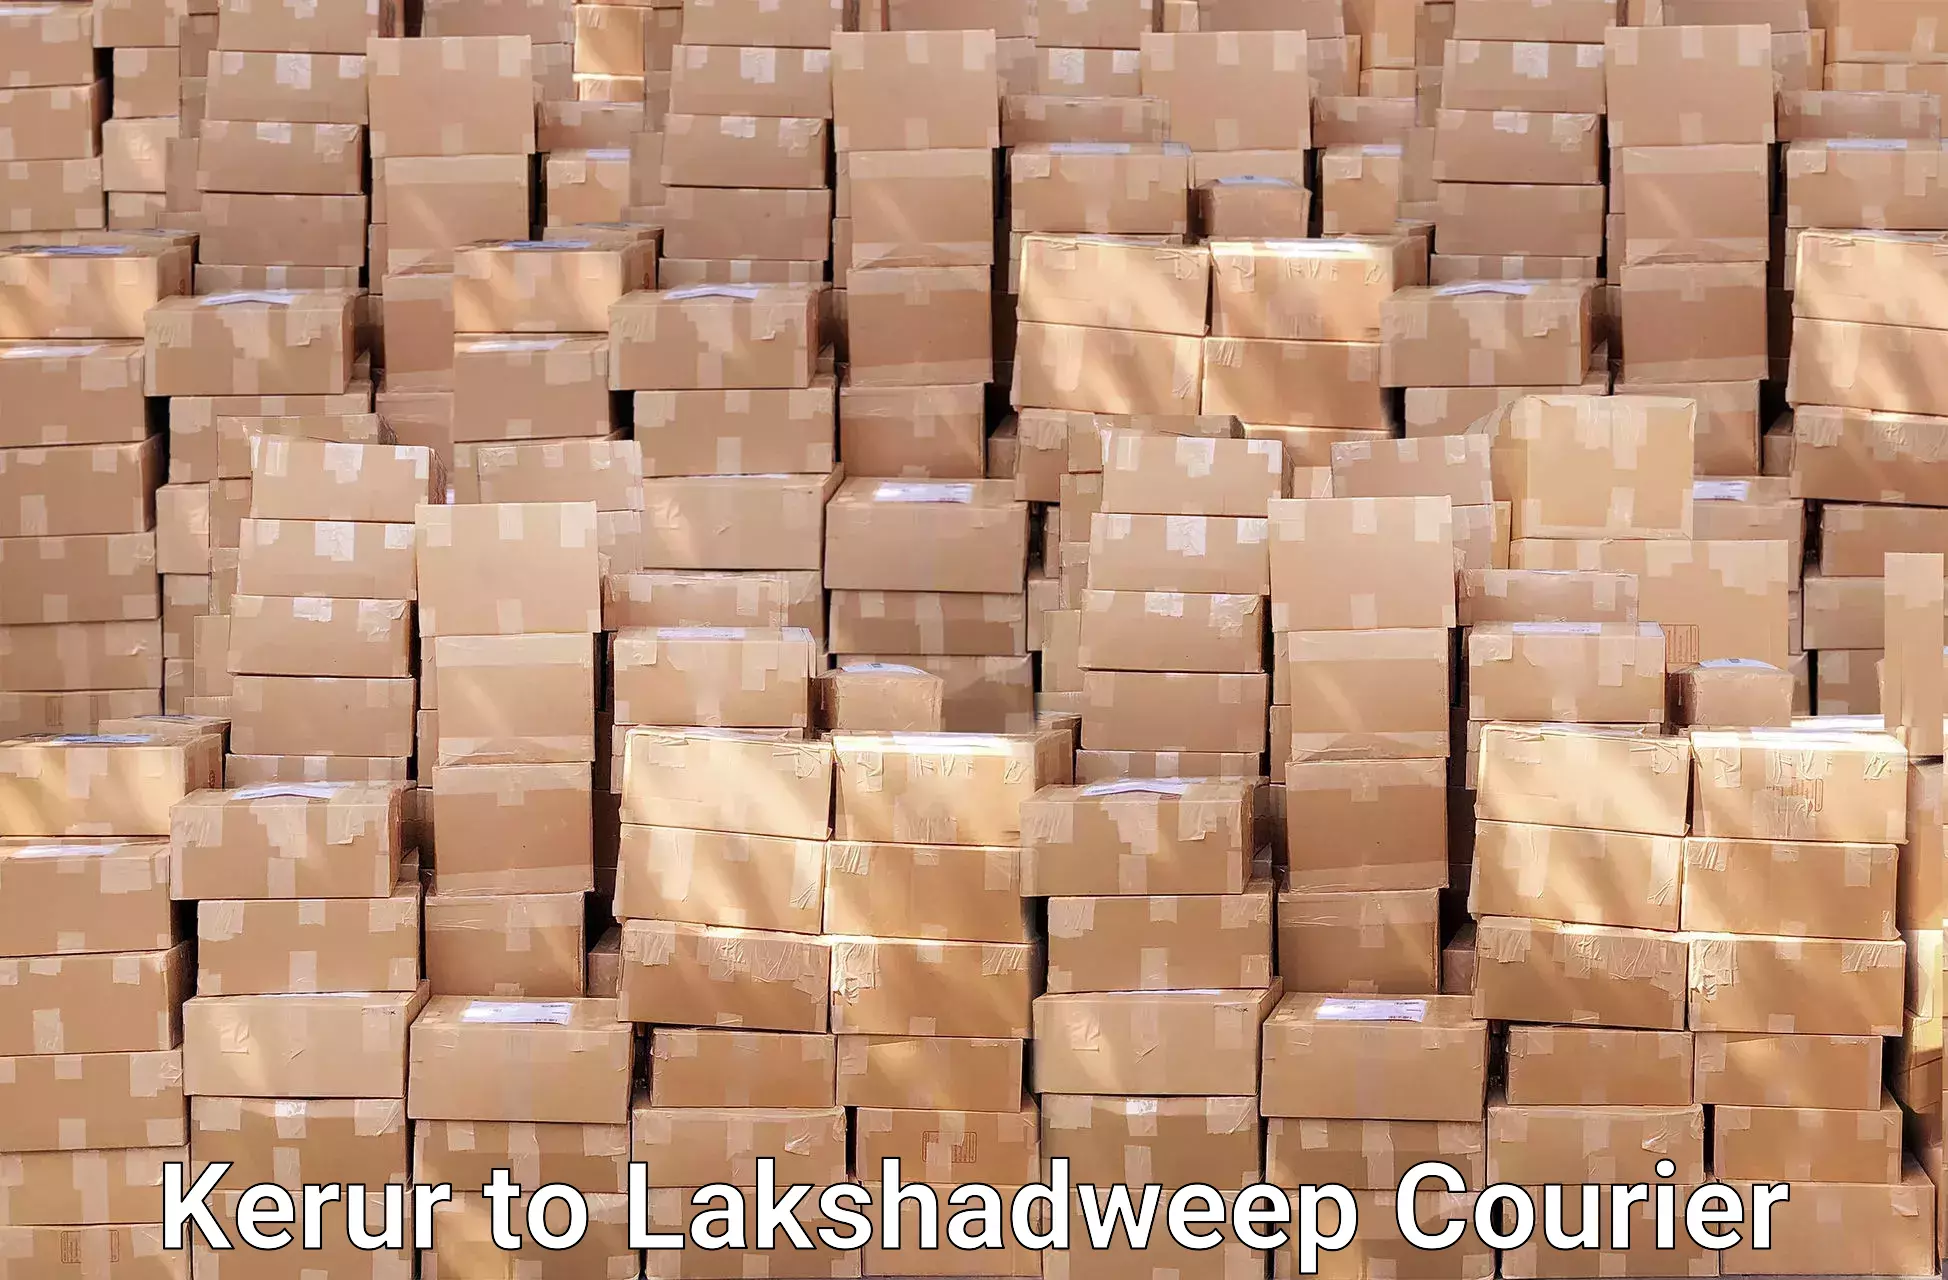 Furniture moving services Kerur to Lakshadweep